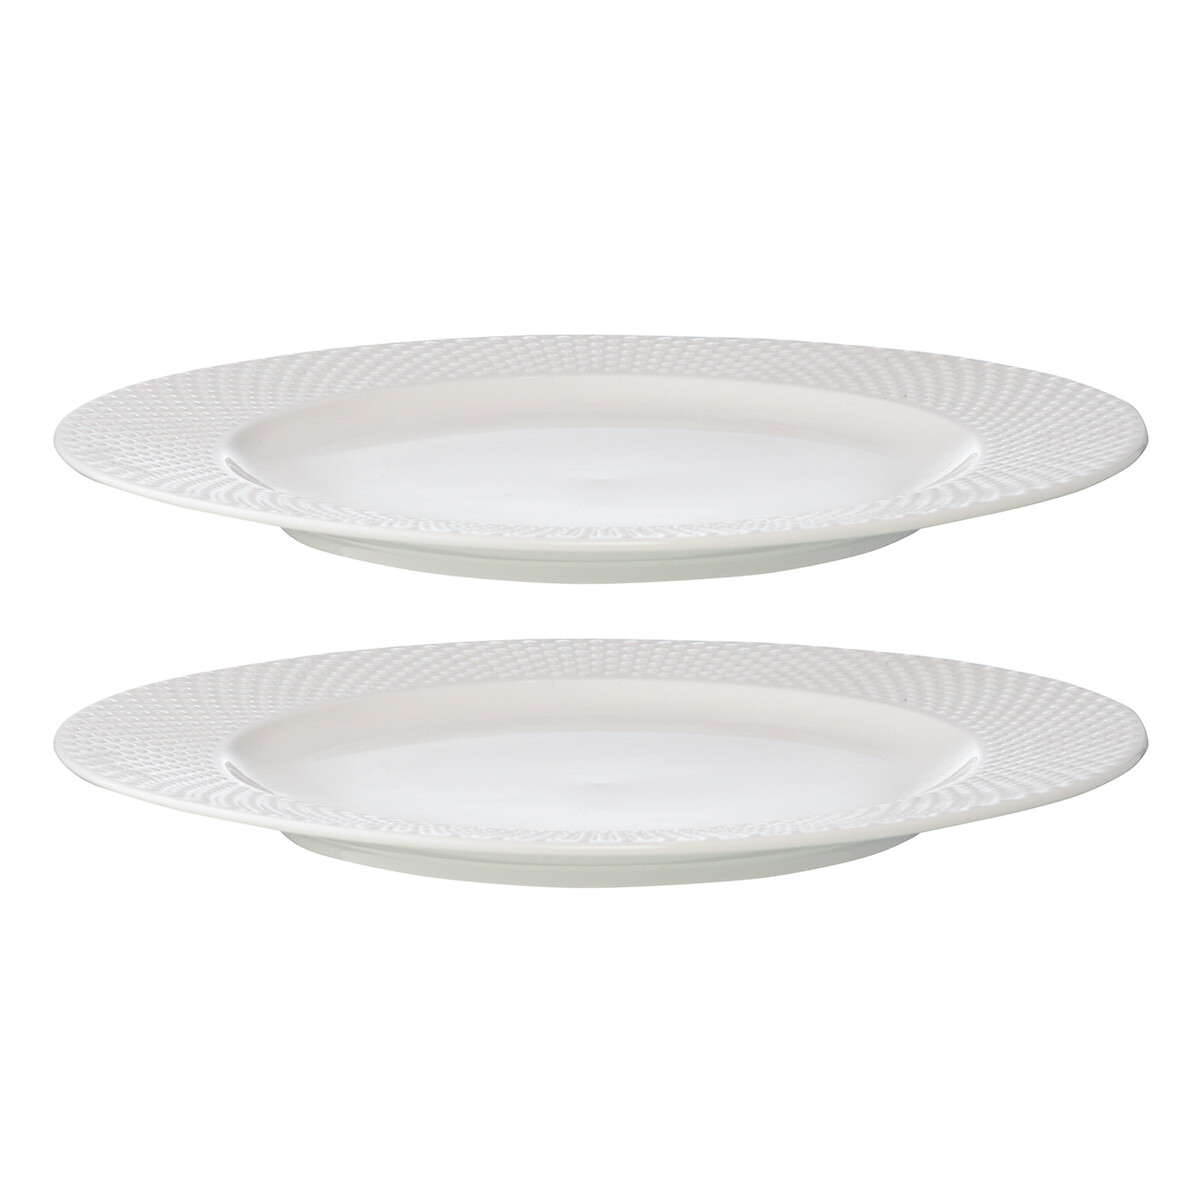 Набор из двух тарелок Essential 27см единый размер белый набор из двух тарелок бежевого цвета из коллекции essential 20см единый размер бежевый